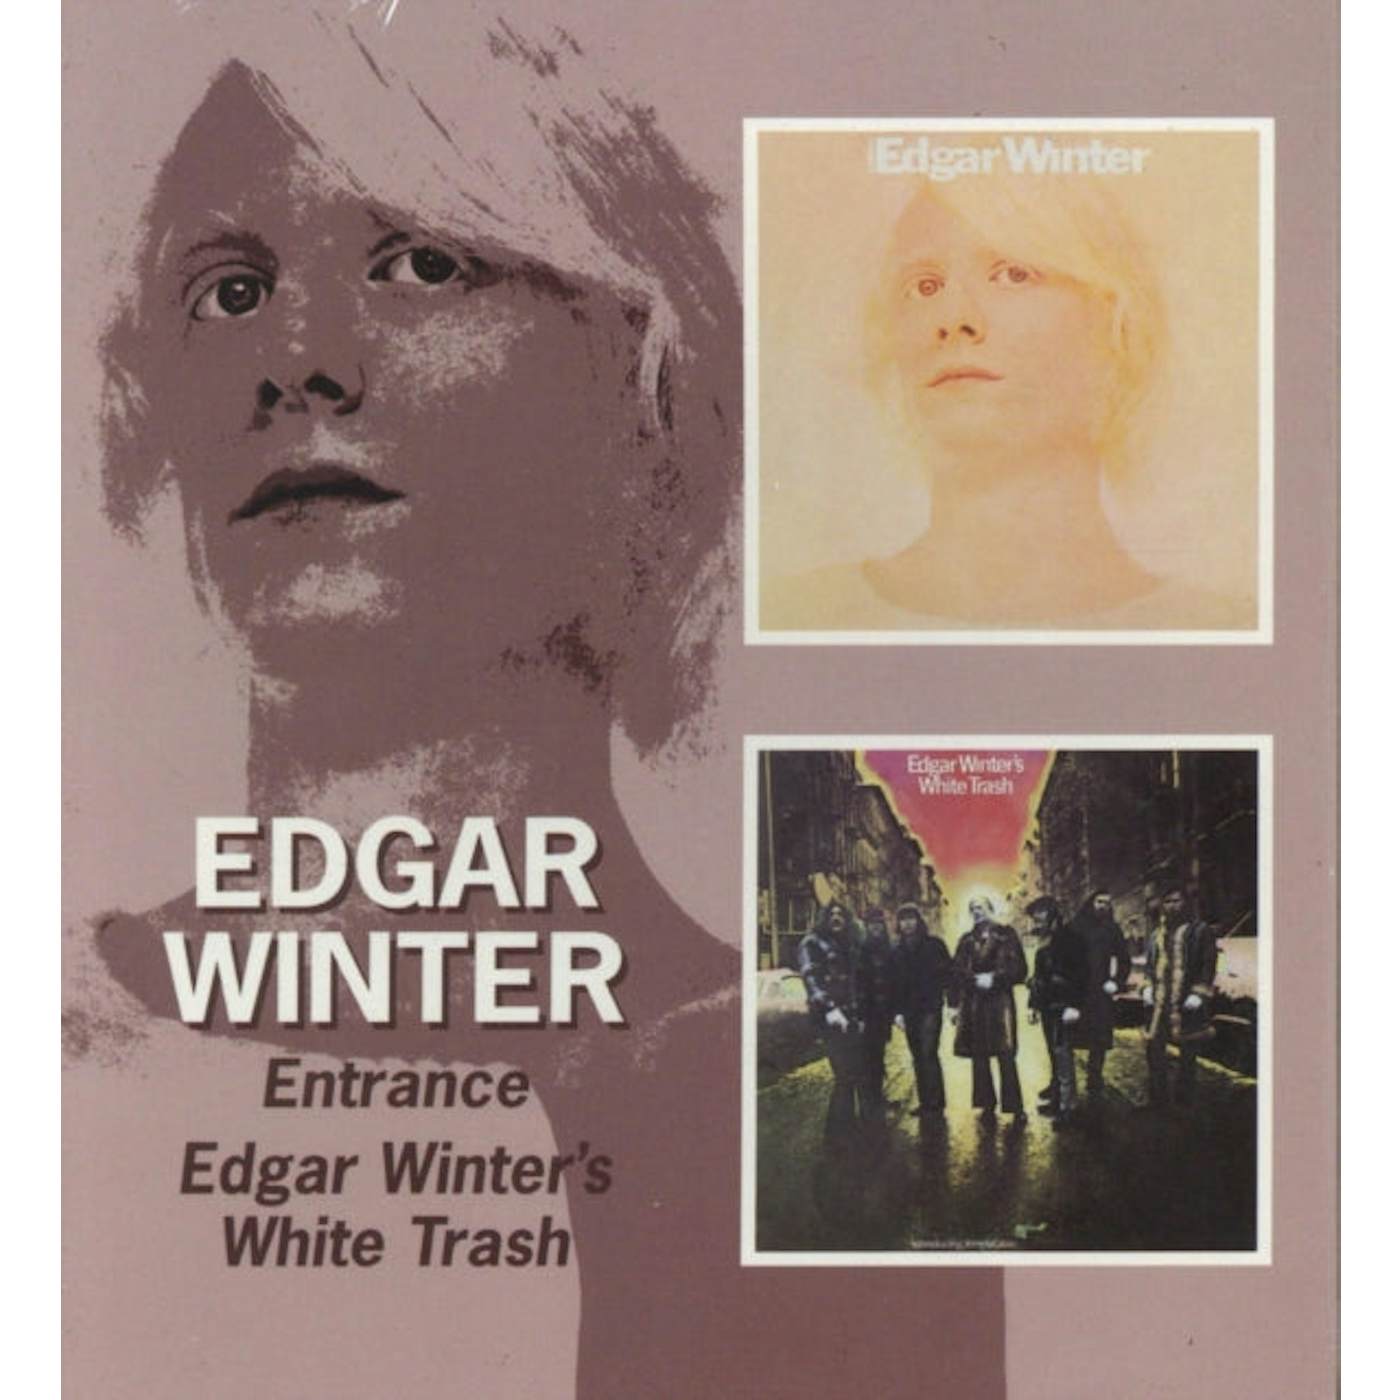 Edgar Winter CD - Entrance & White Trash